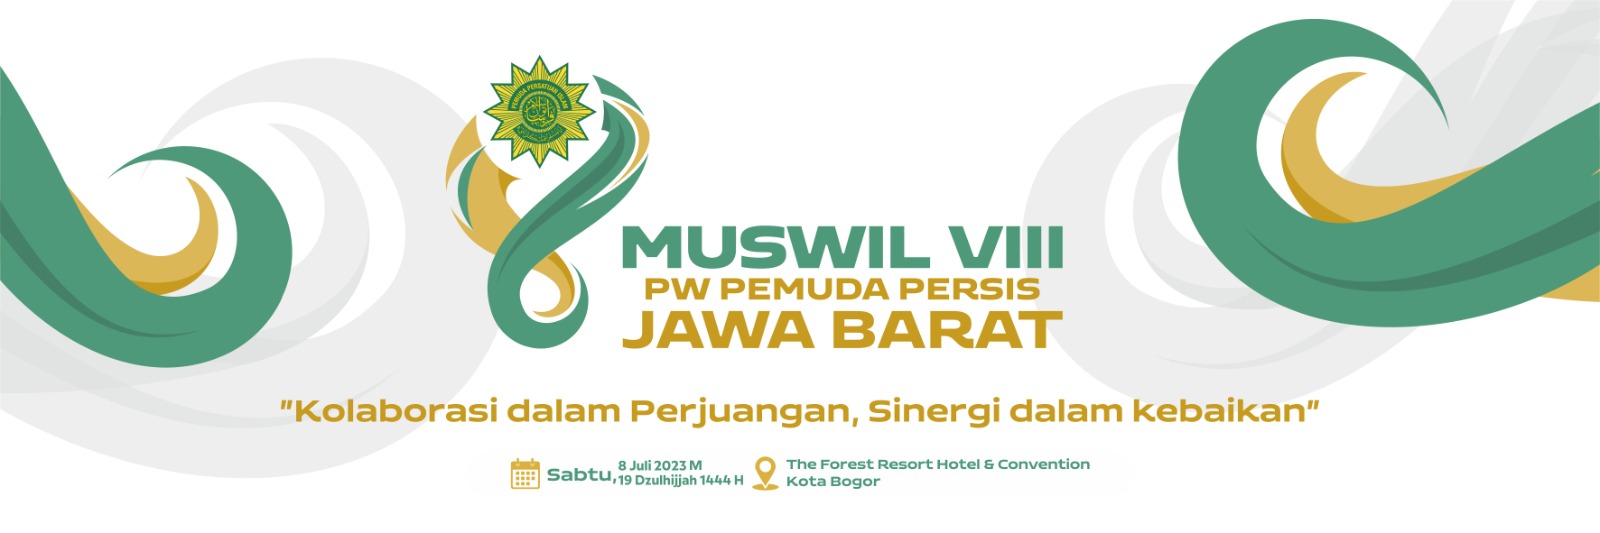 Panduan Logo dan Banner Muswil VIII